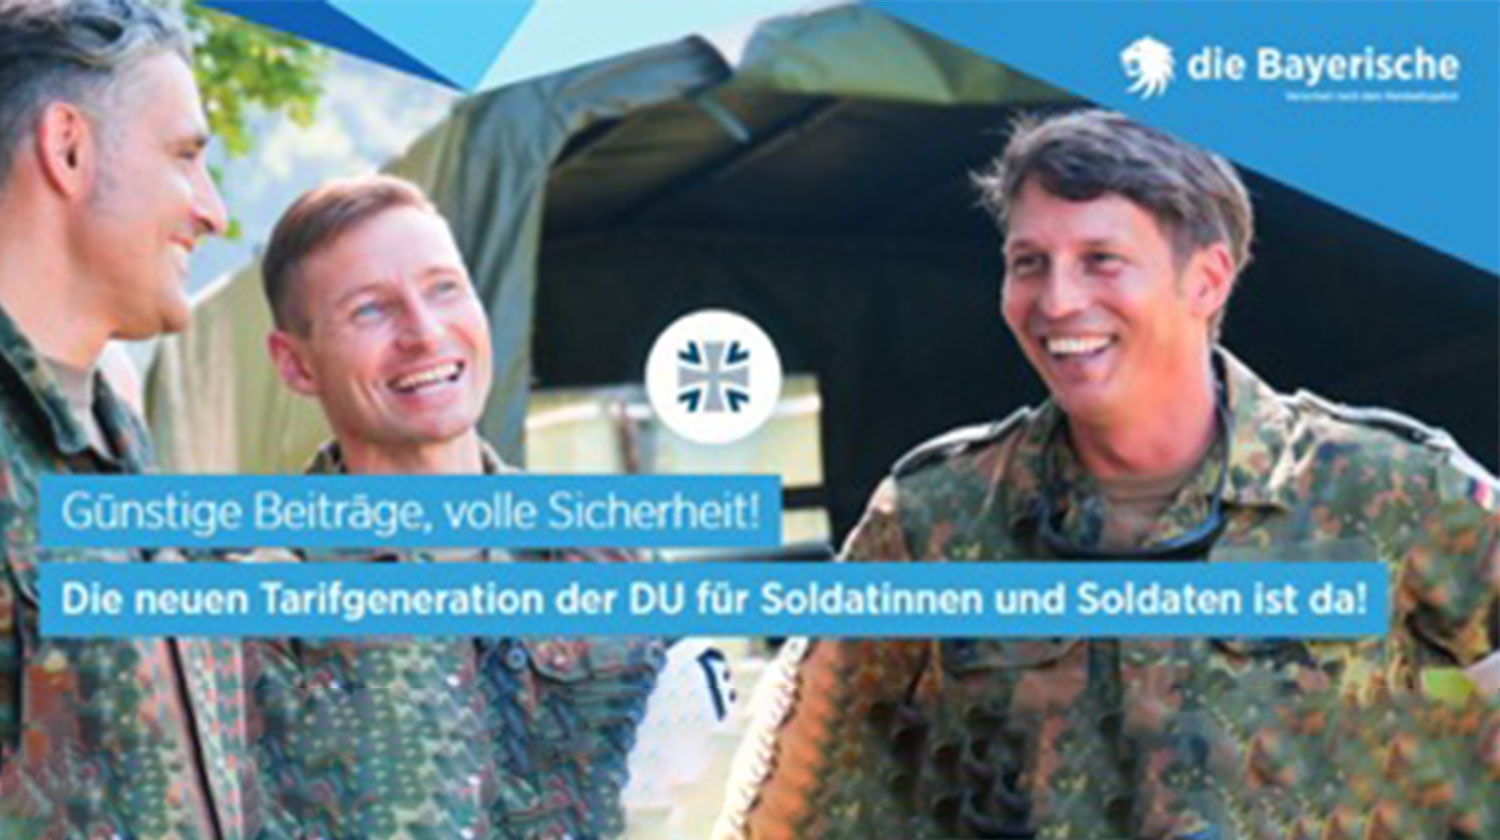 Die Bayerische  – die neue BU PROTECT Bundeswehr